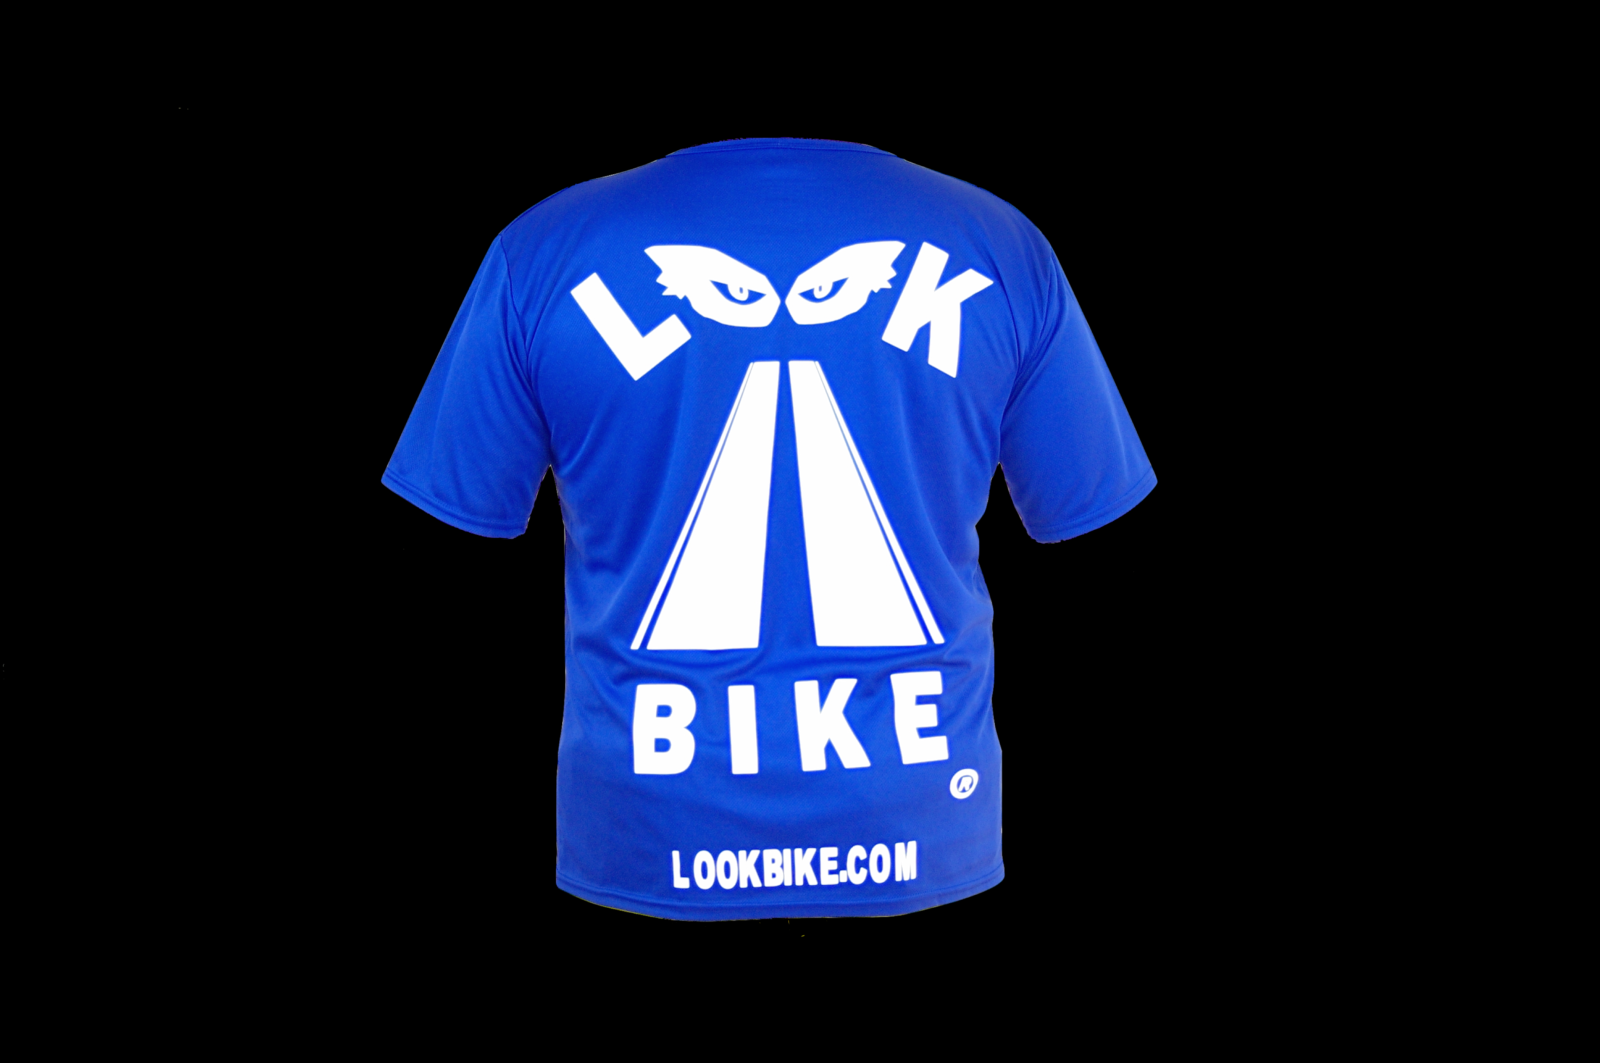 Lookbike